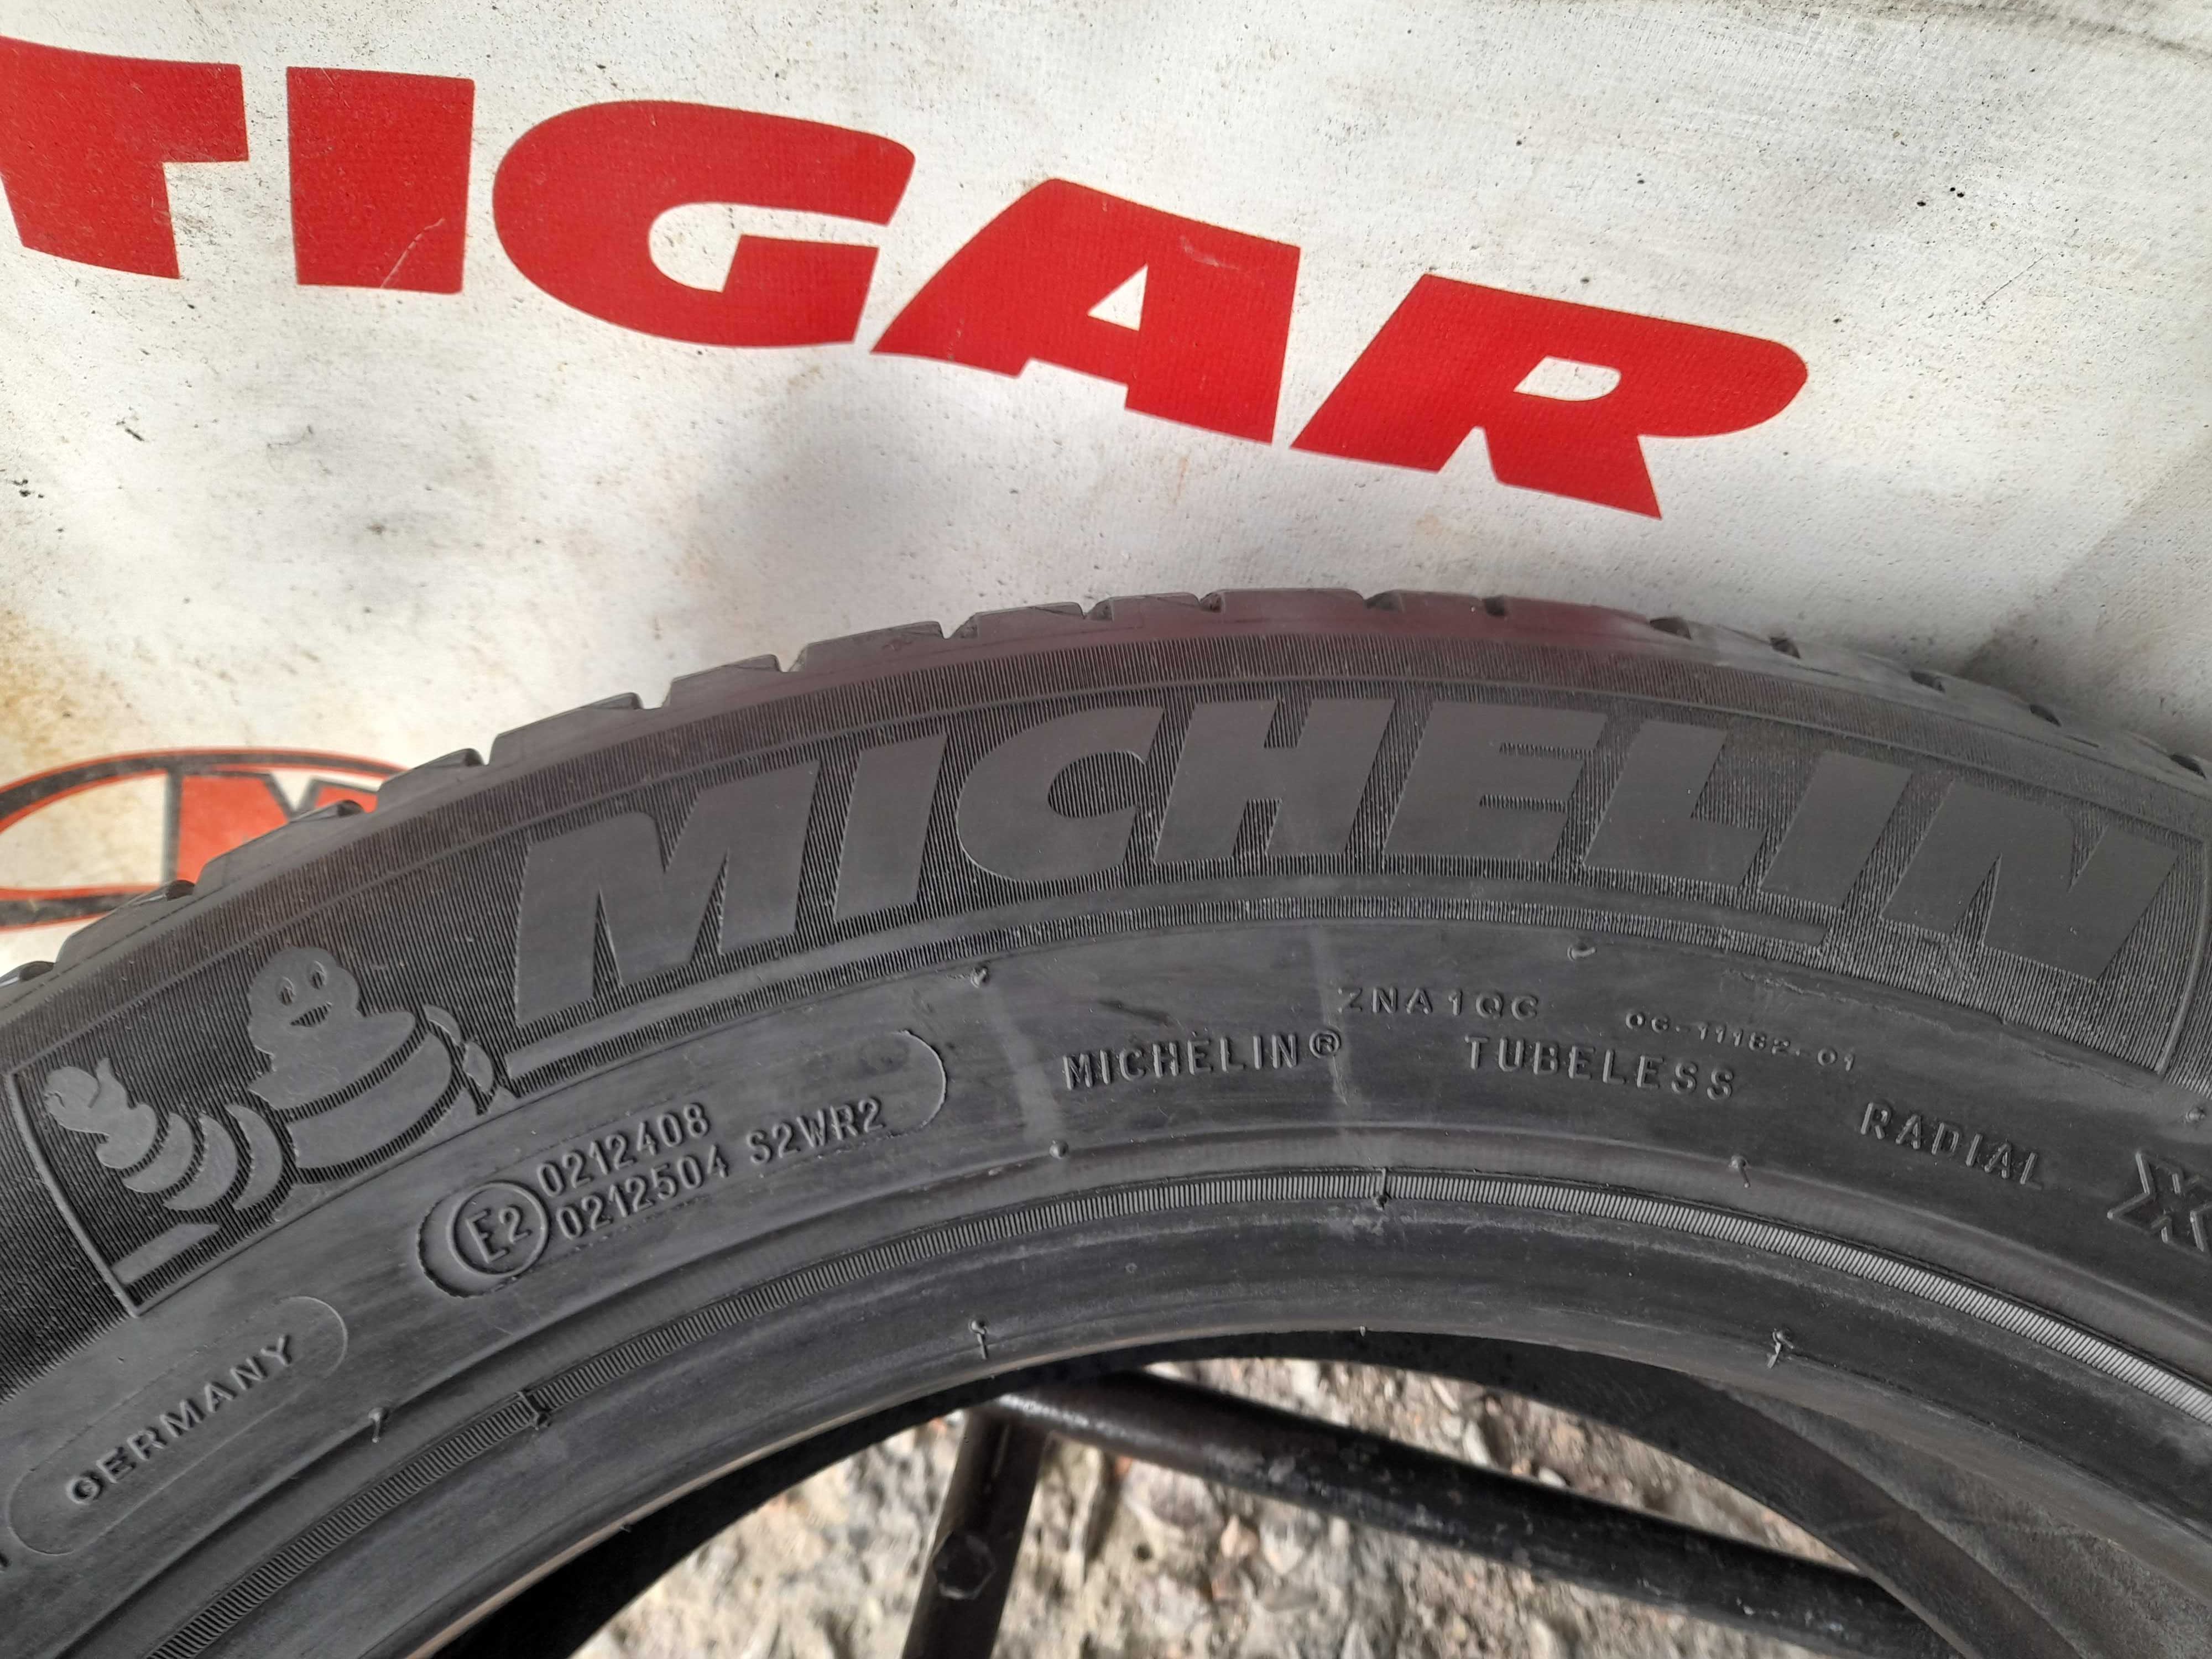 Літні шини 215/60 R17 Michelin primacy 3